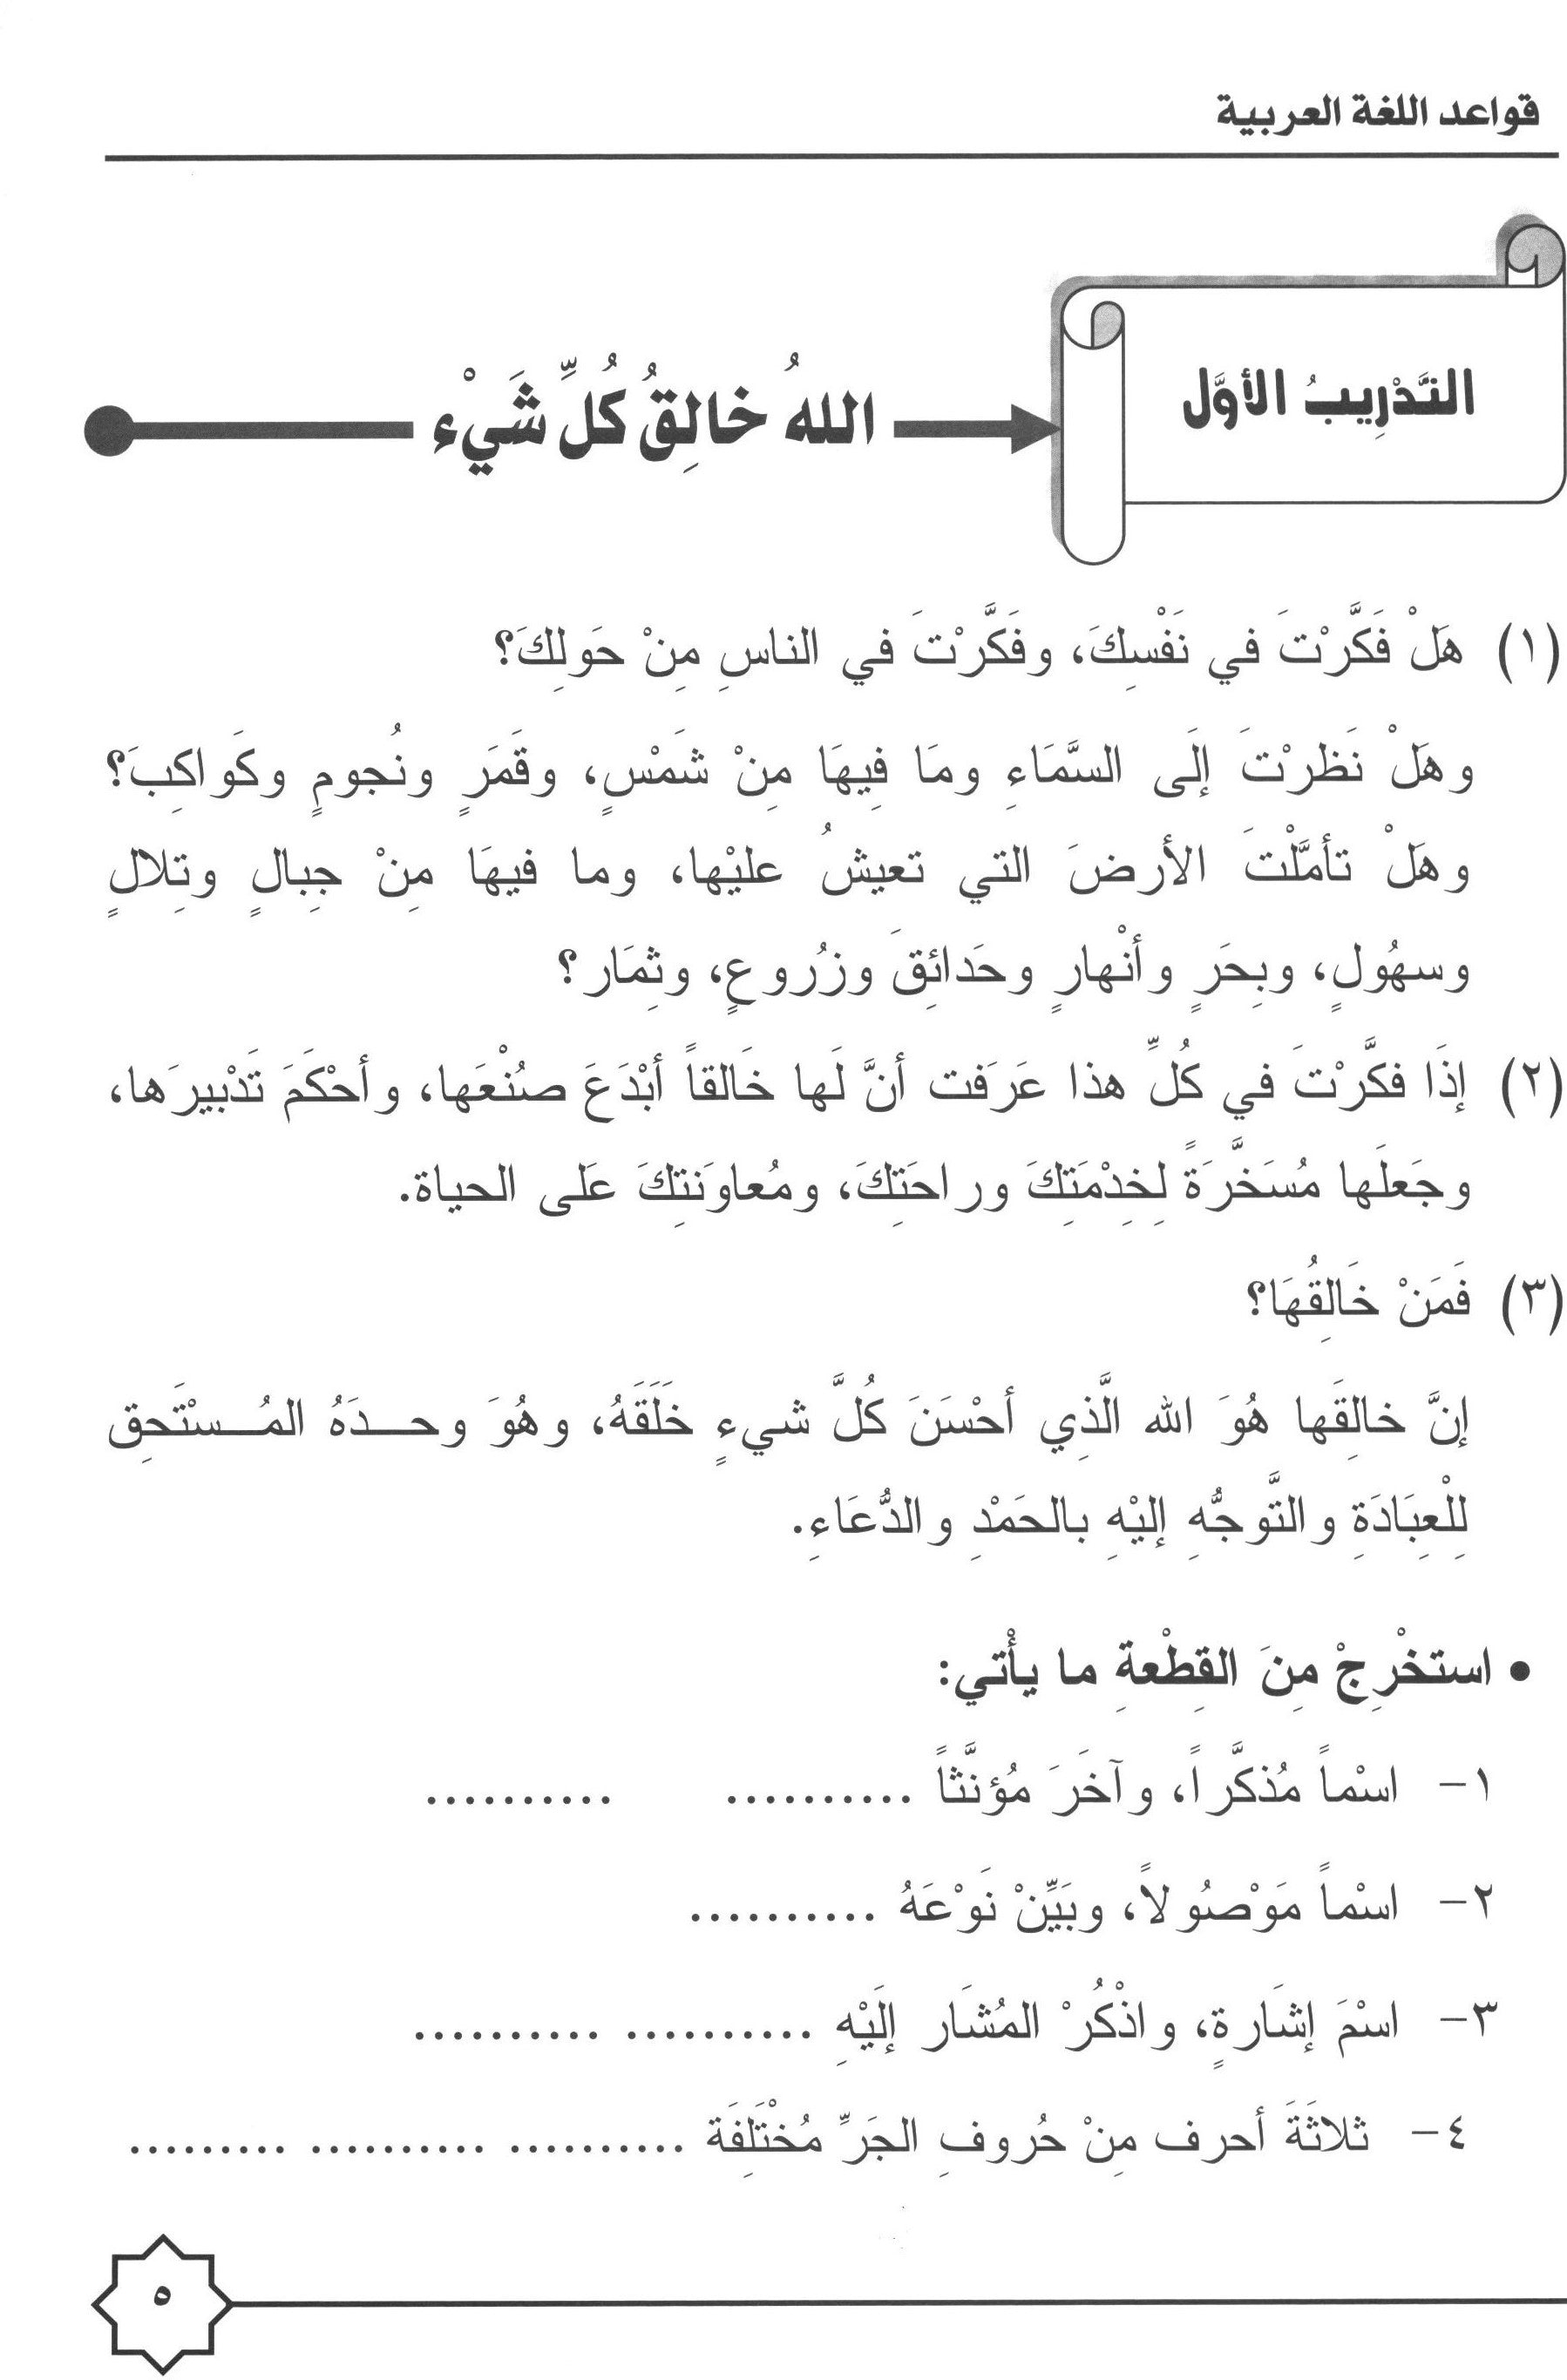 Al-Rowad Arabic Grammar Level 3 Part 1 تدريبات في قواعد اللّغة العربيّة